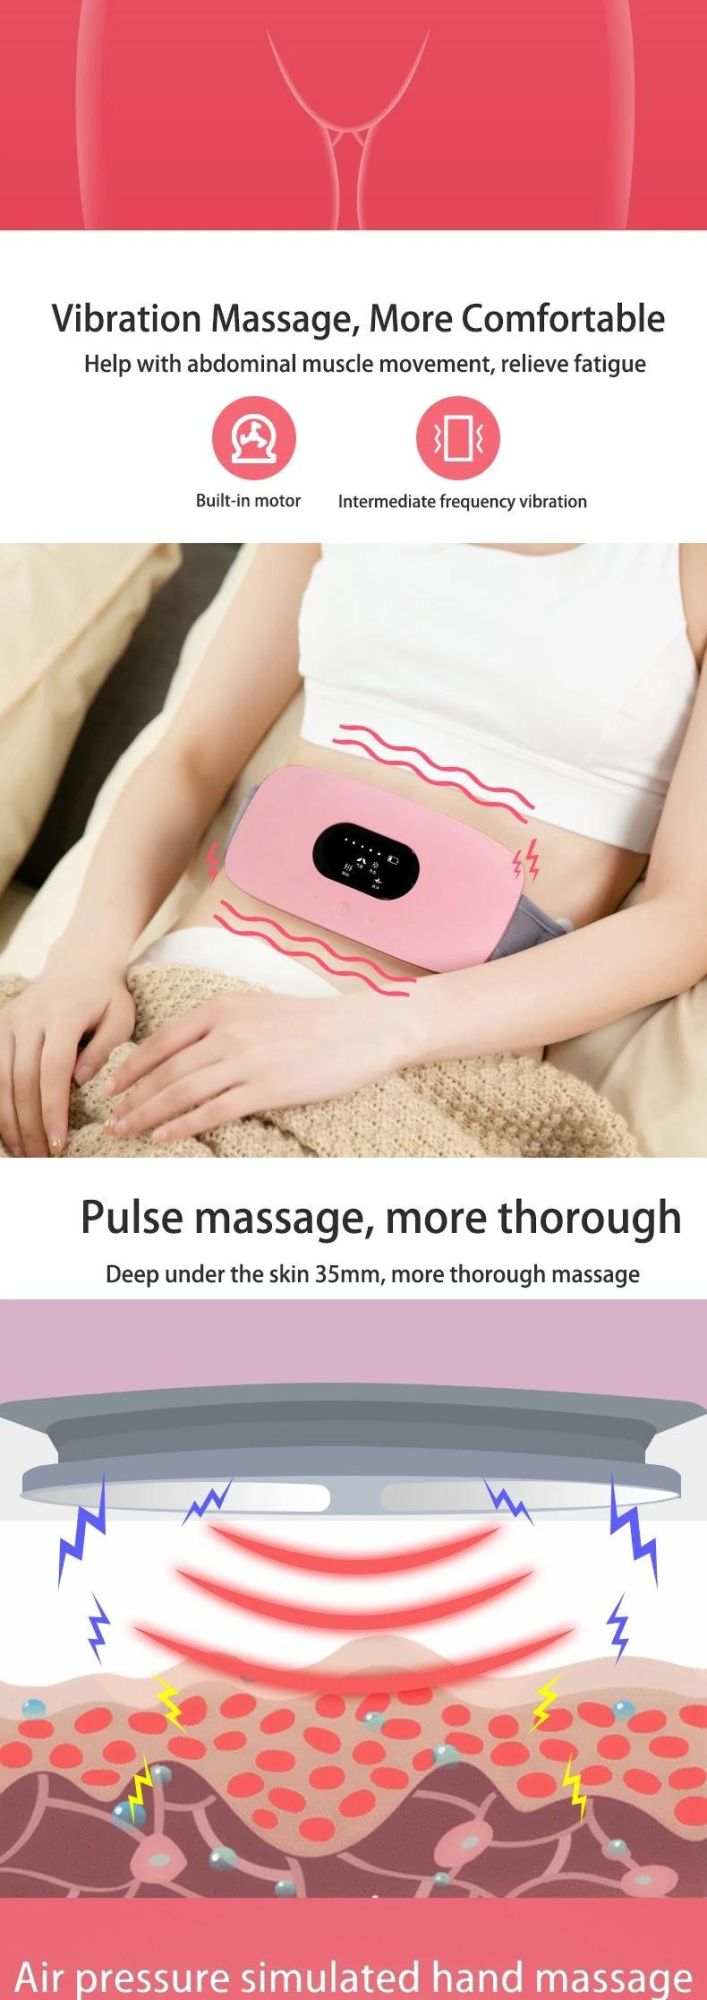 Hezheng High Quality Warm Massager Belly Belt Heating Pad Warm Uterus Massage Heating Belt